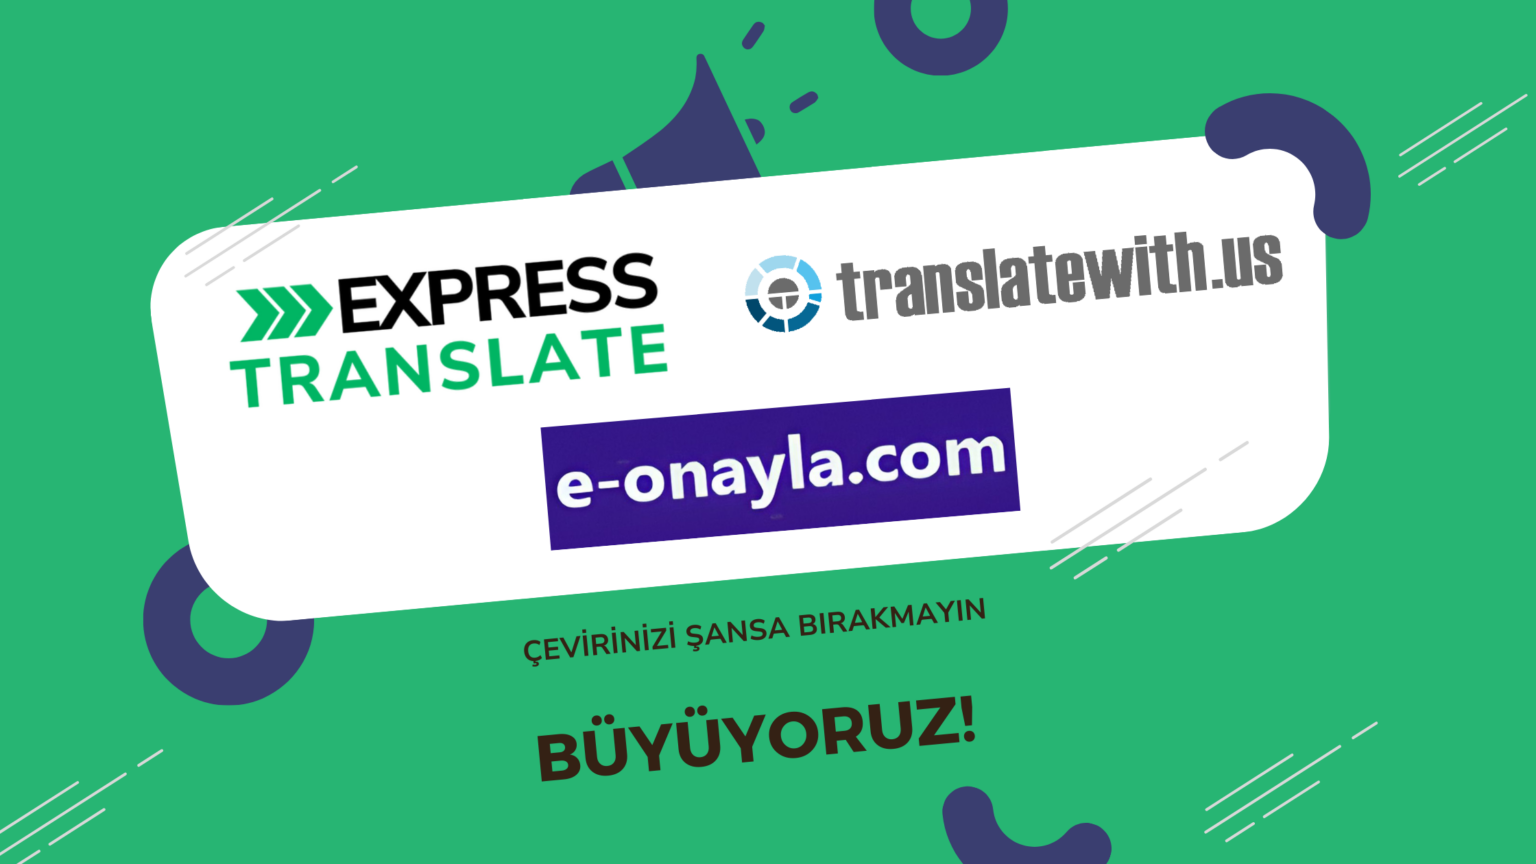 Translatewith.us ve e-onayla.com artık Express Translate Ailesinin Bir Parçası